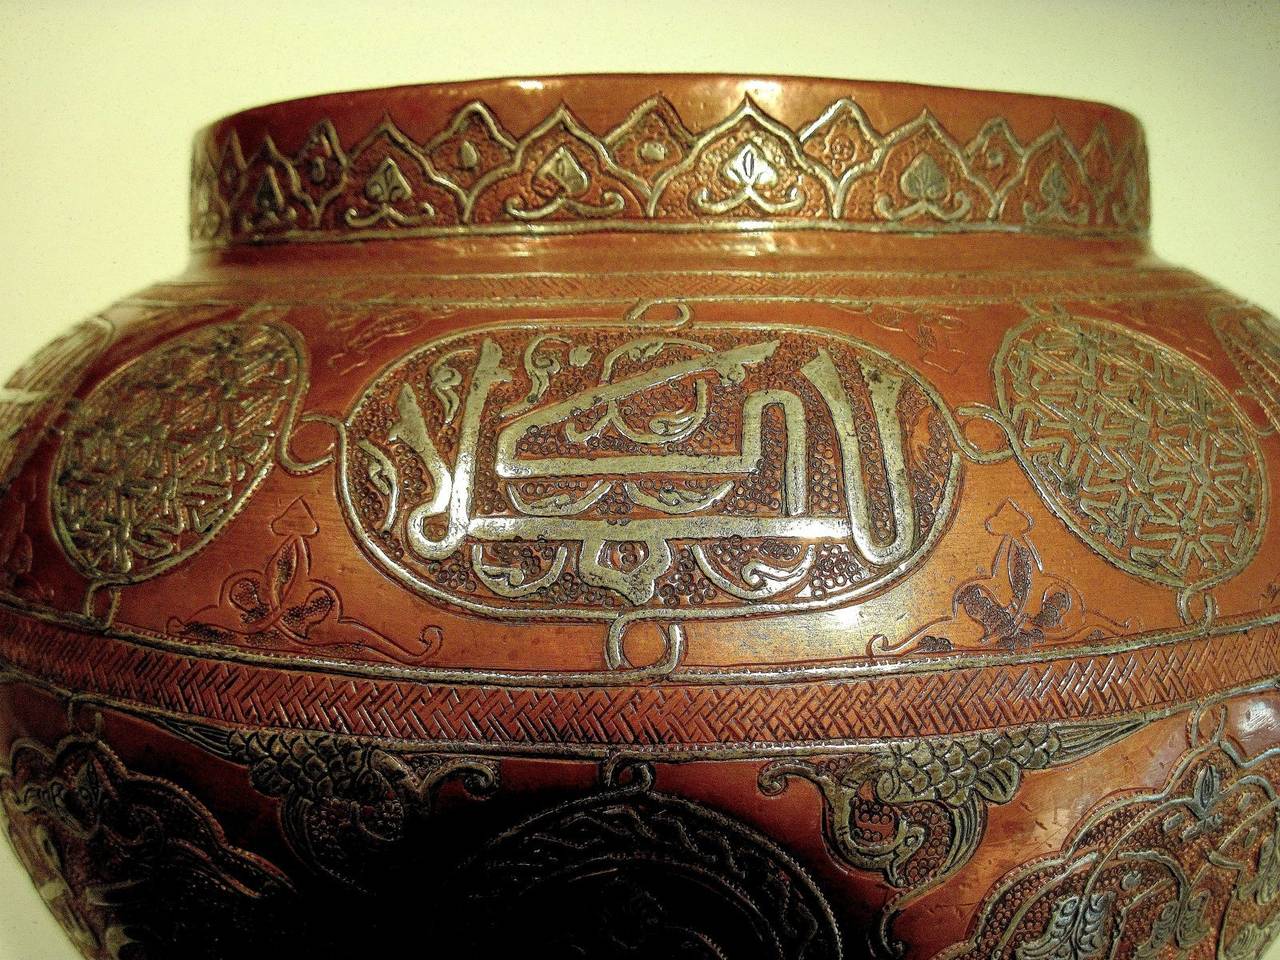 Hammered Massive Cairoware Jardinaire, Syria, 19th Century